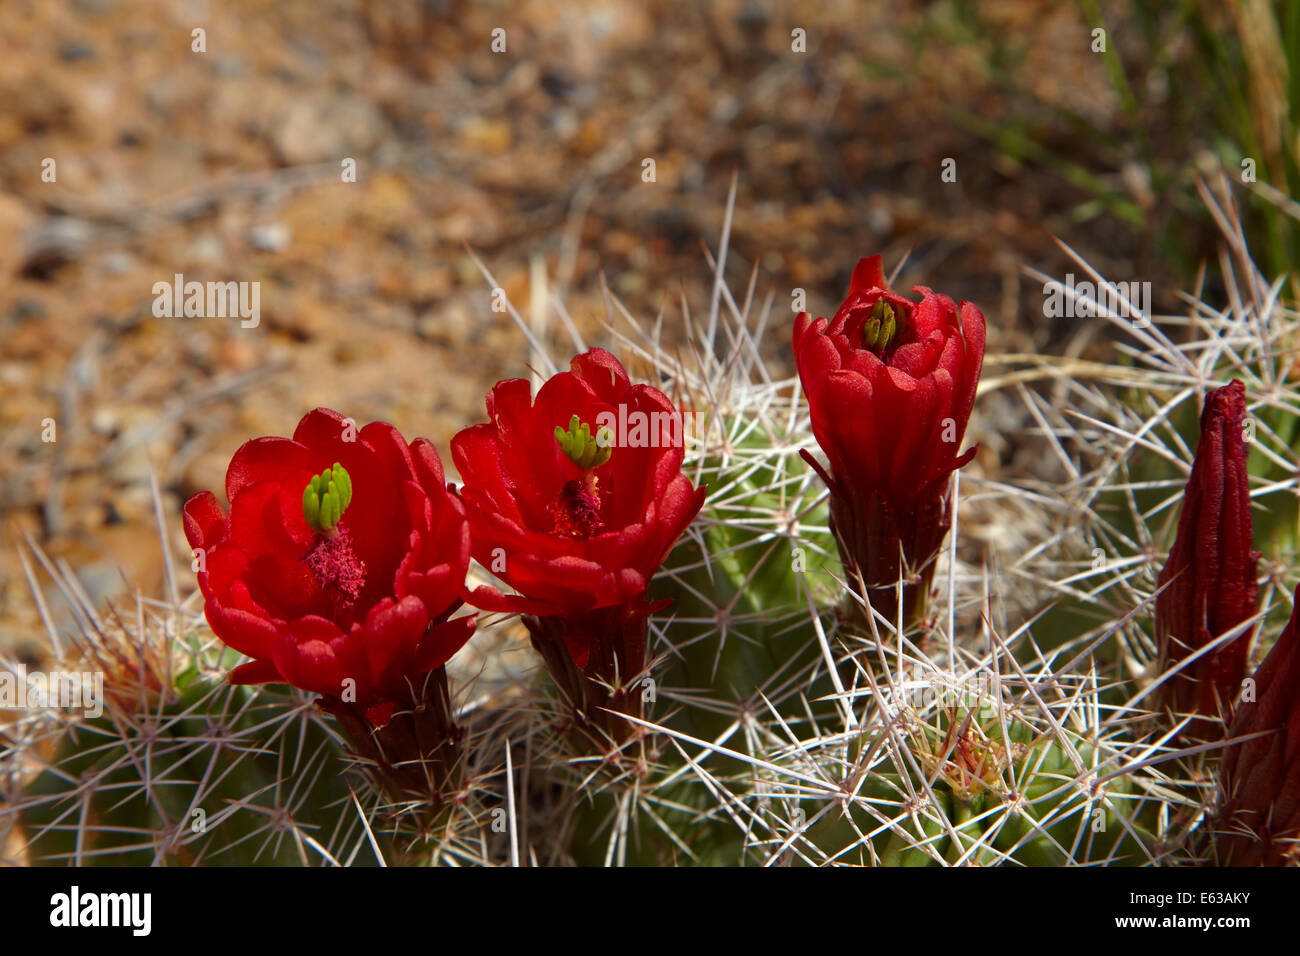 Claret Cup (fleurs de cactus Echinocereus triglochidiatus), Arches National Park, près de Moab, Utah, USA Banque D'Images